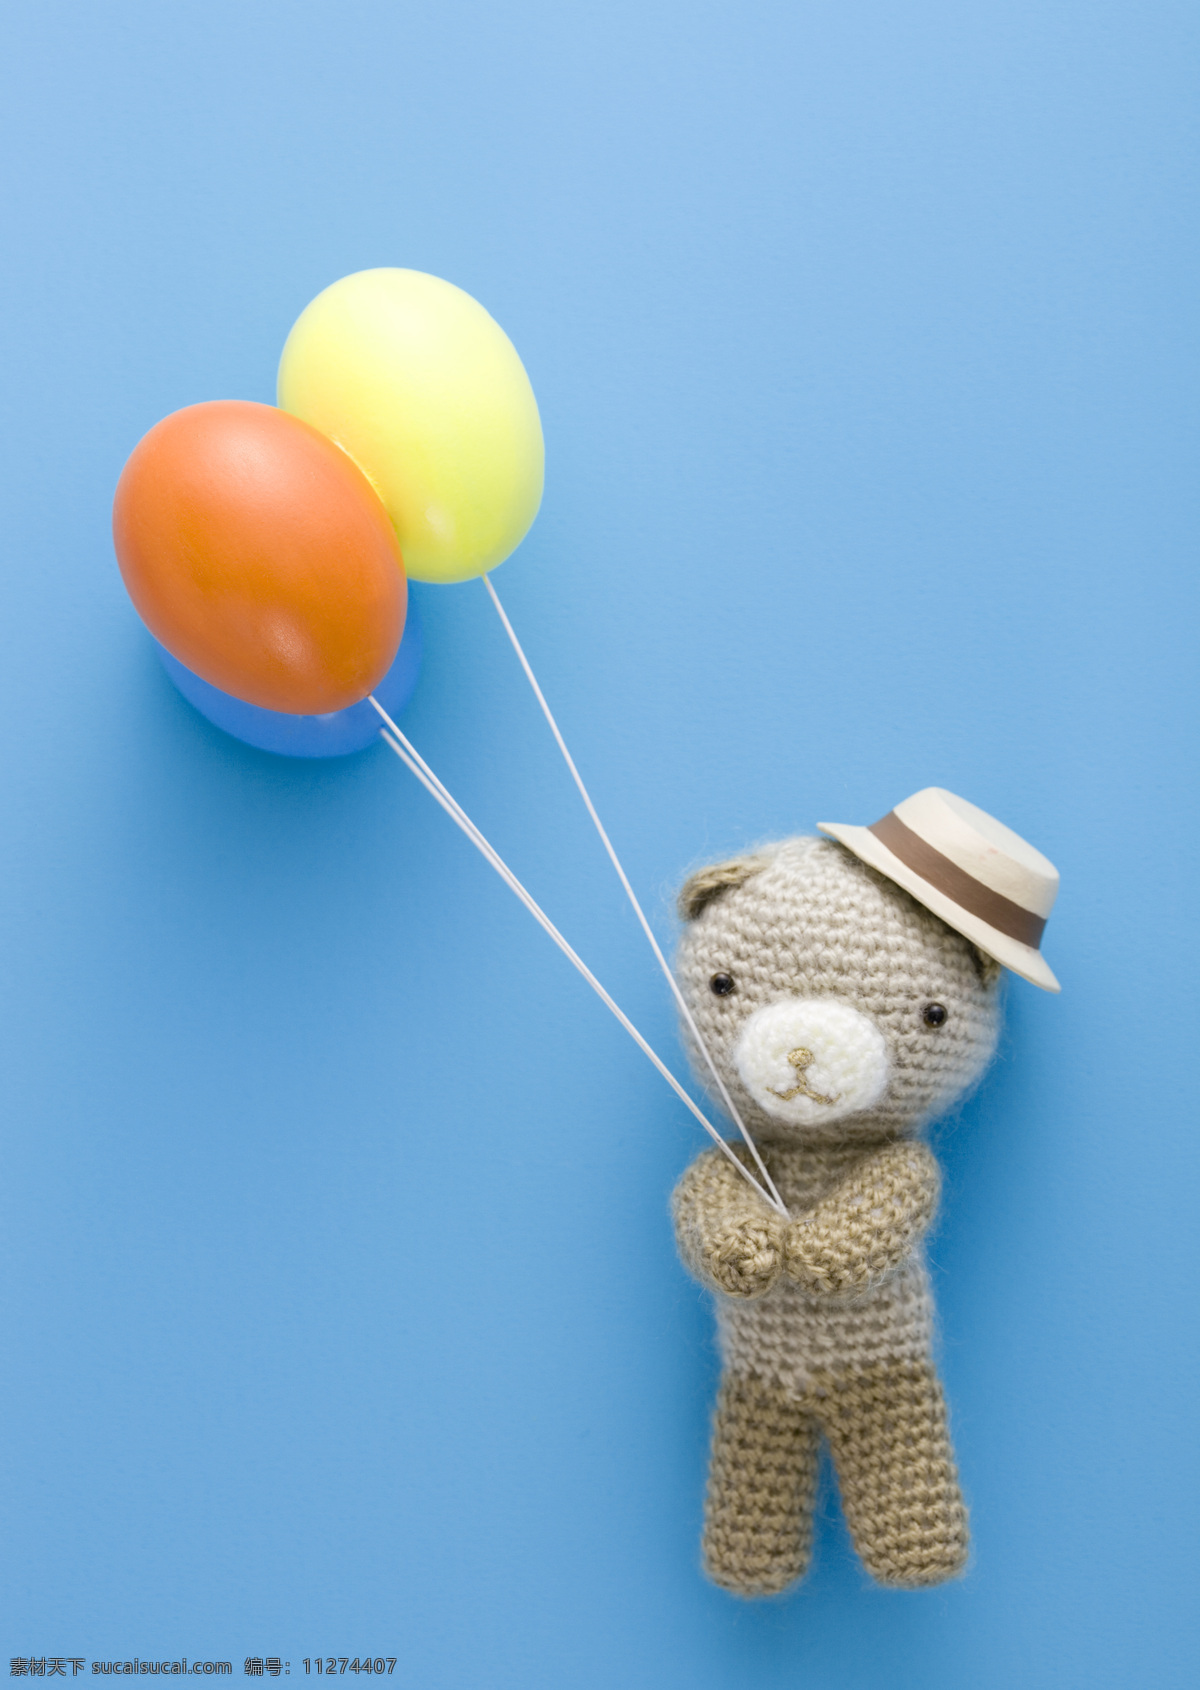 礼物图片素材 针织礼物 礼物盒 礼物 动物礼物 熊 玩具 气球 针织礼品 其他类别 生活百科